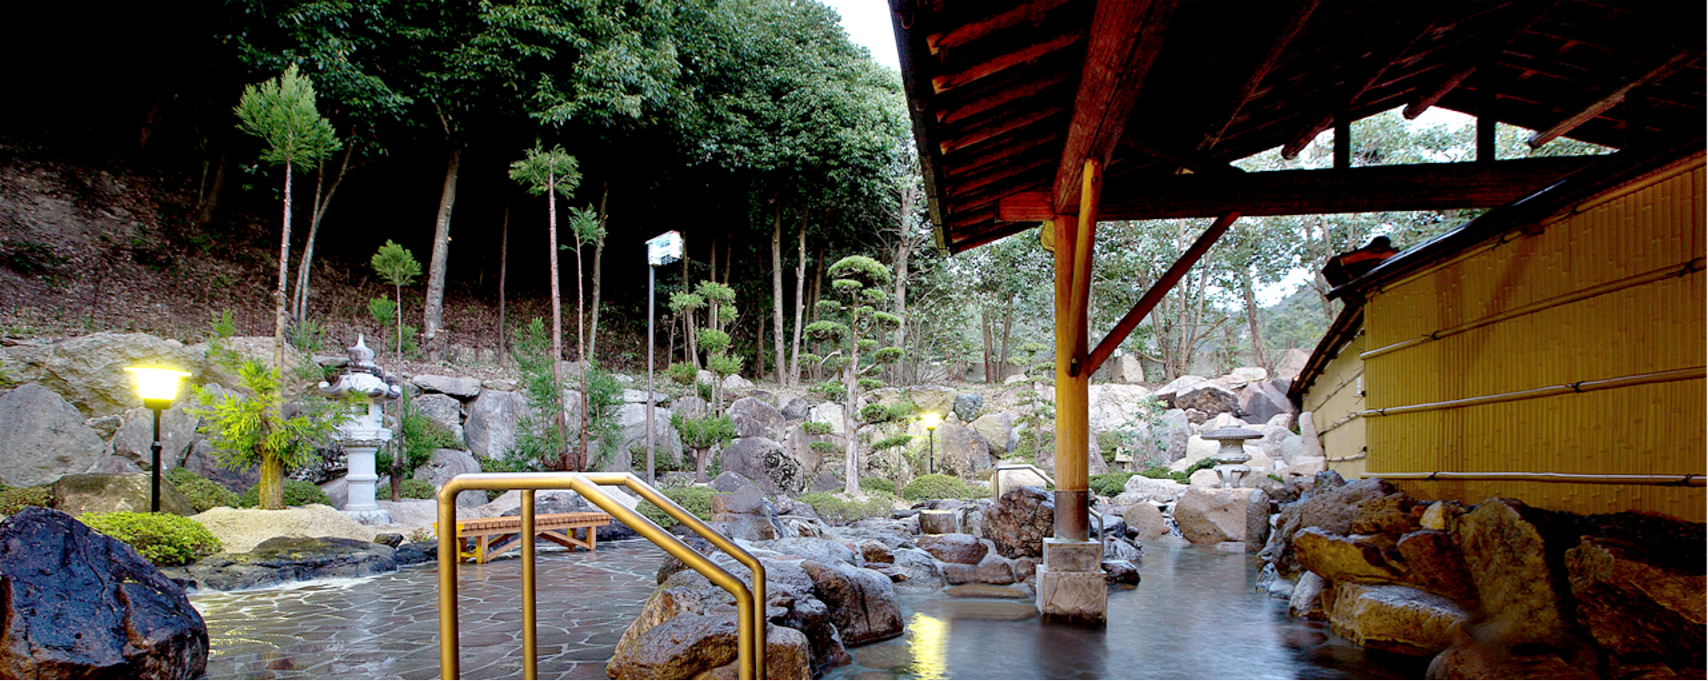 石灯篭や大きな岩が配置され庭園風の和情緒あふれる造りとなっている、和気鵜飼谷温泉の露天風呂の写真